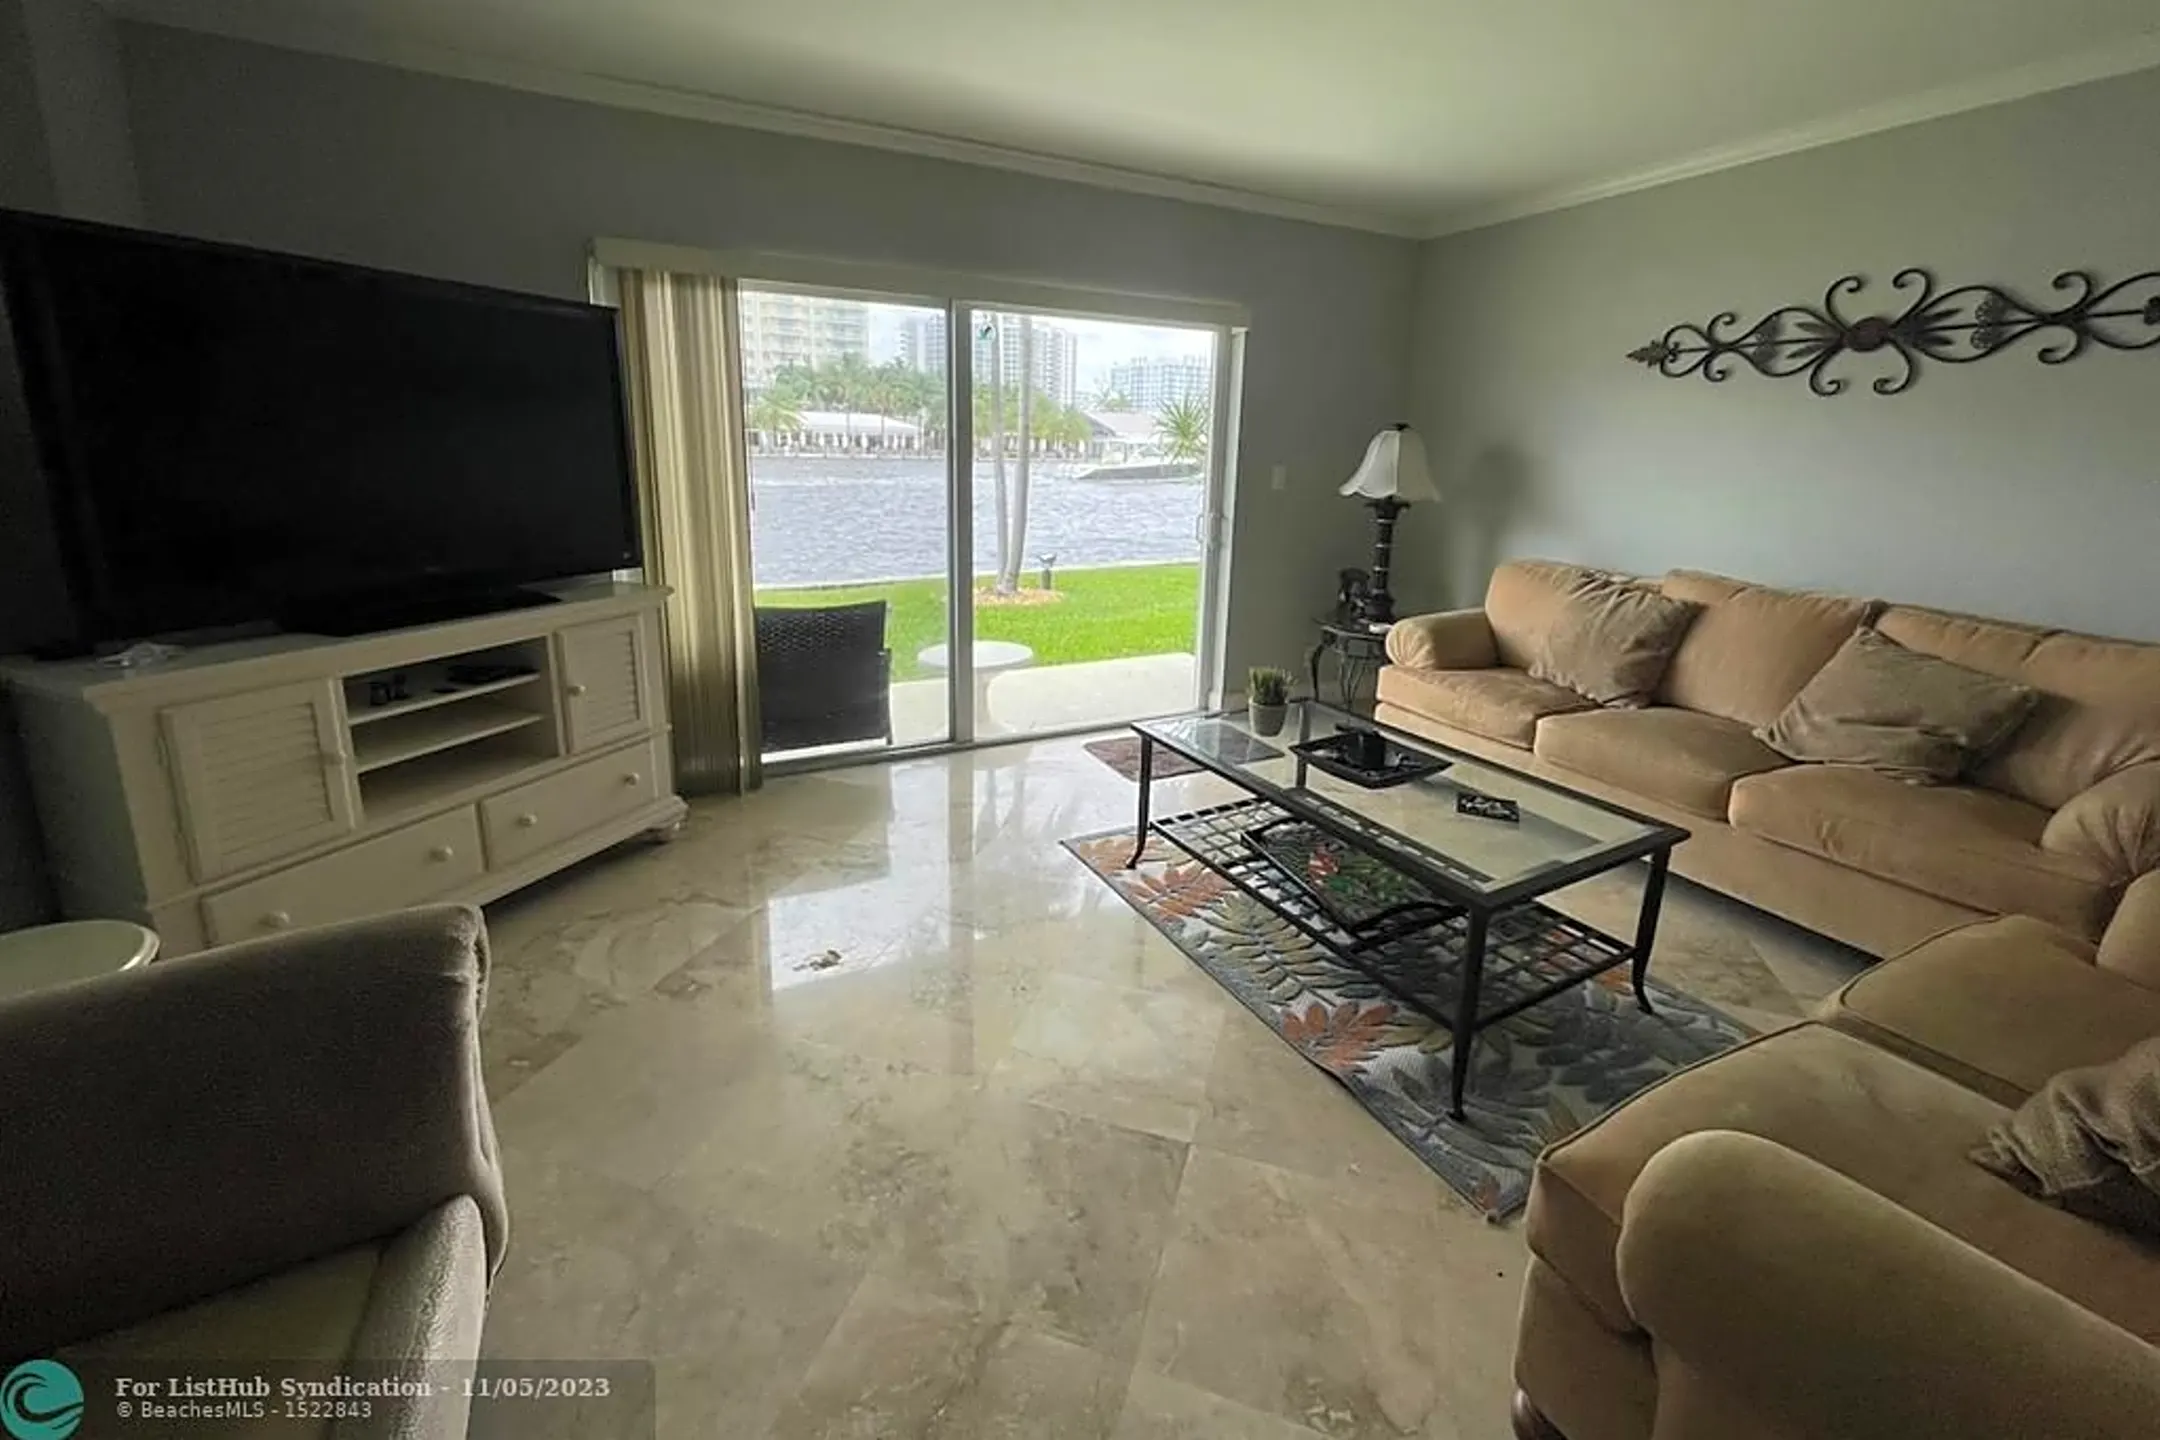 Living Room - 2900 NE 30th St #M1 - Fort Lauderdale, FL